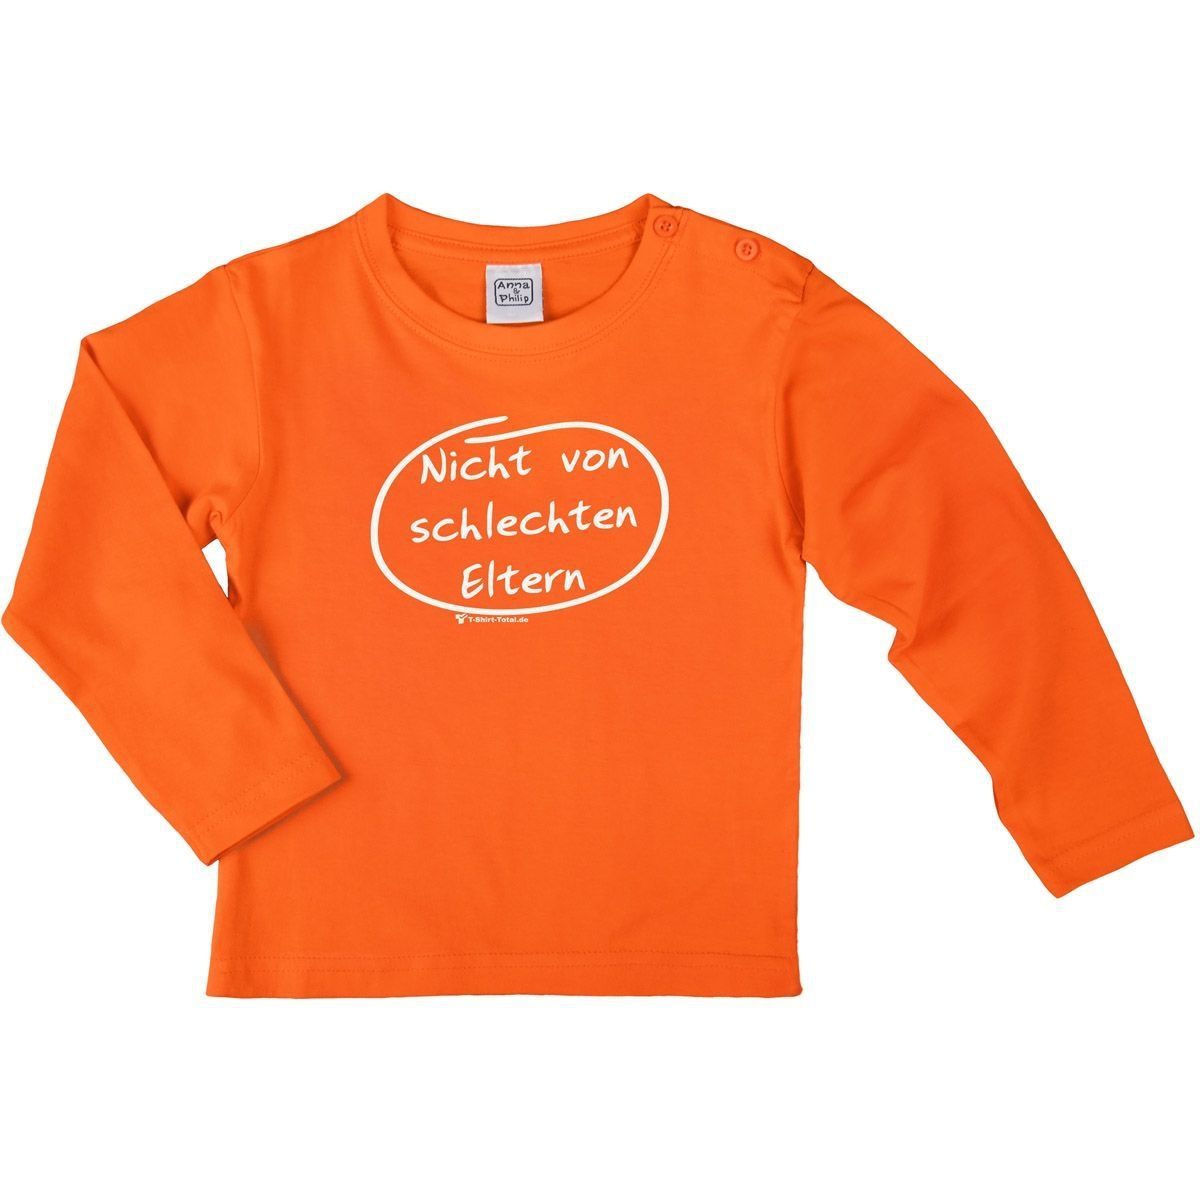 Nicht von schlechten Eltern Kinder Langarm Shirt orange 92